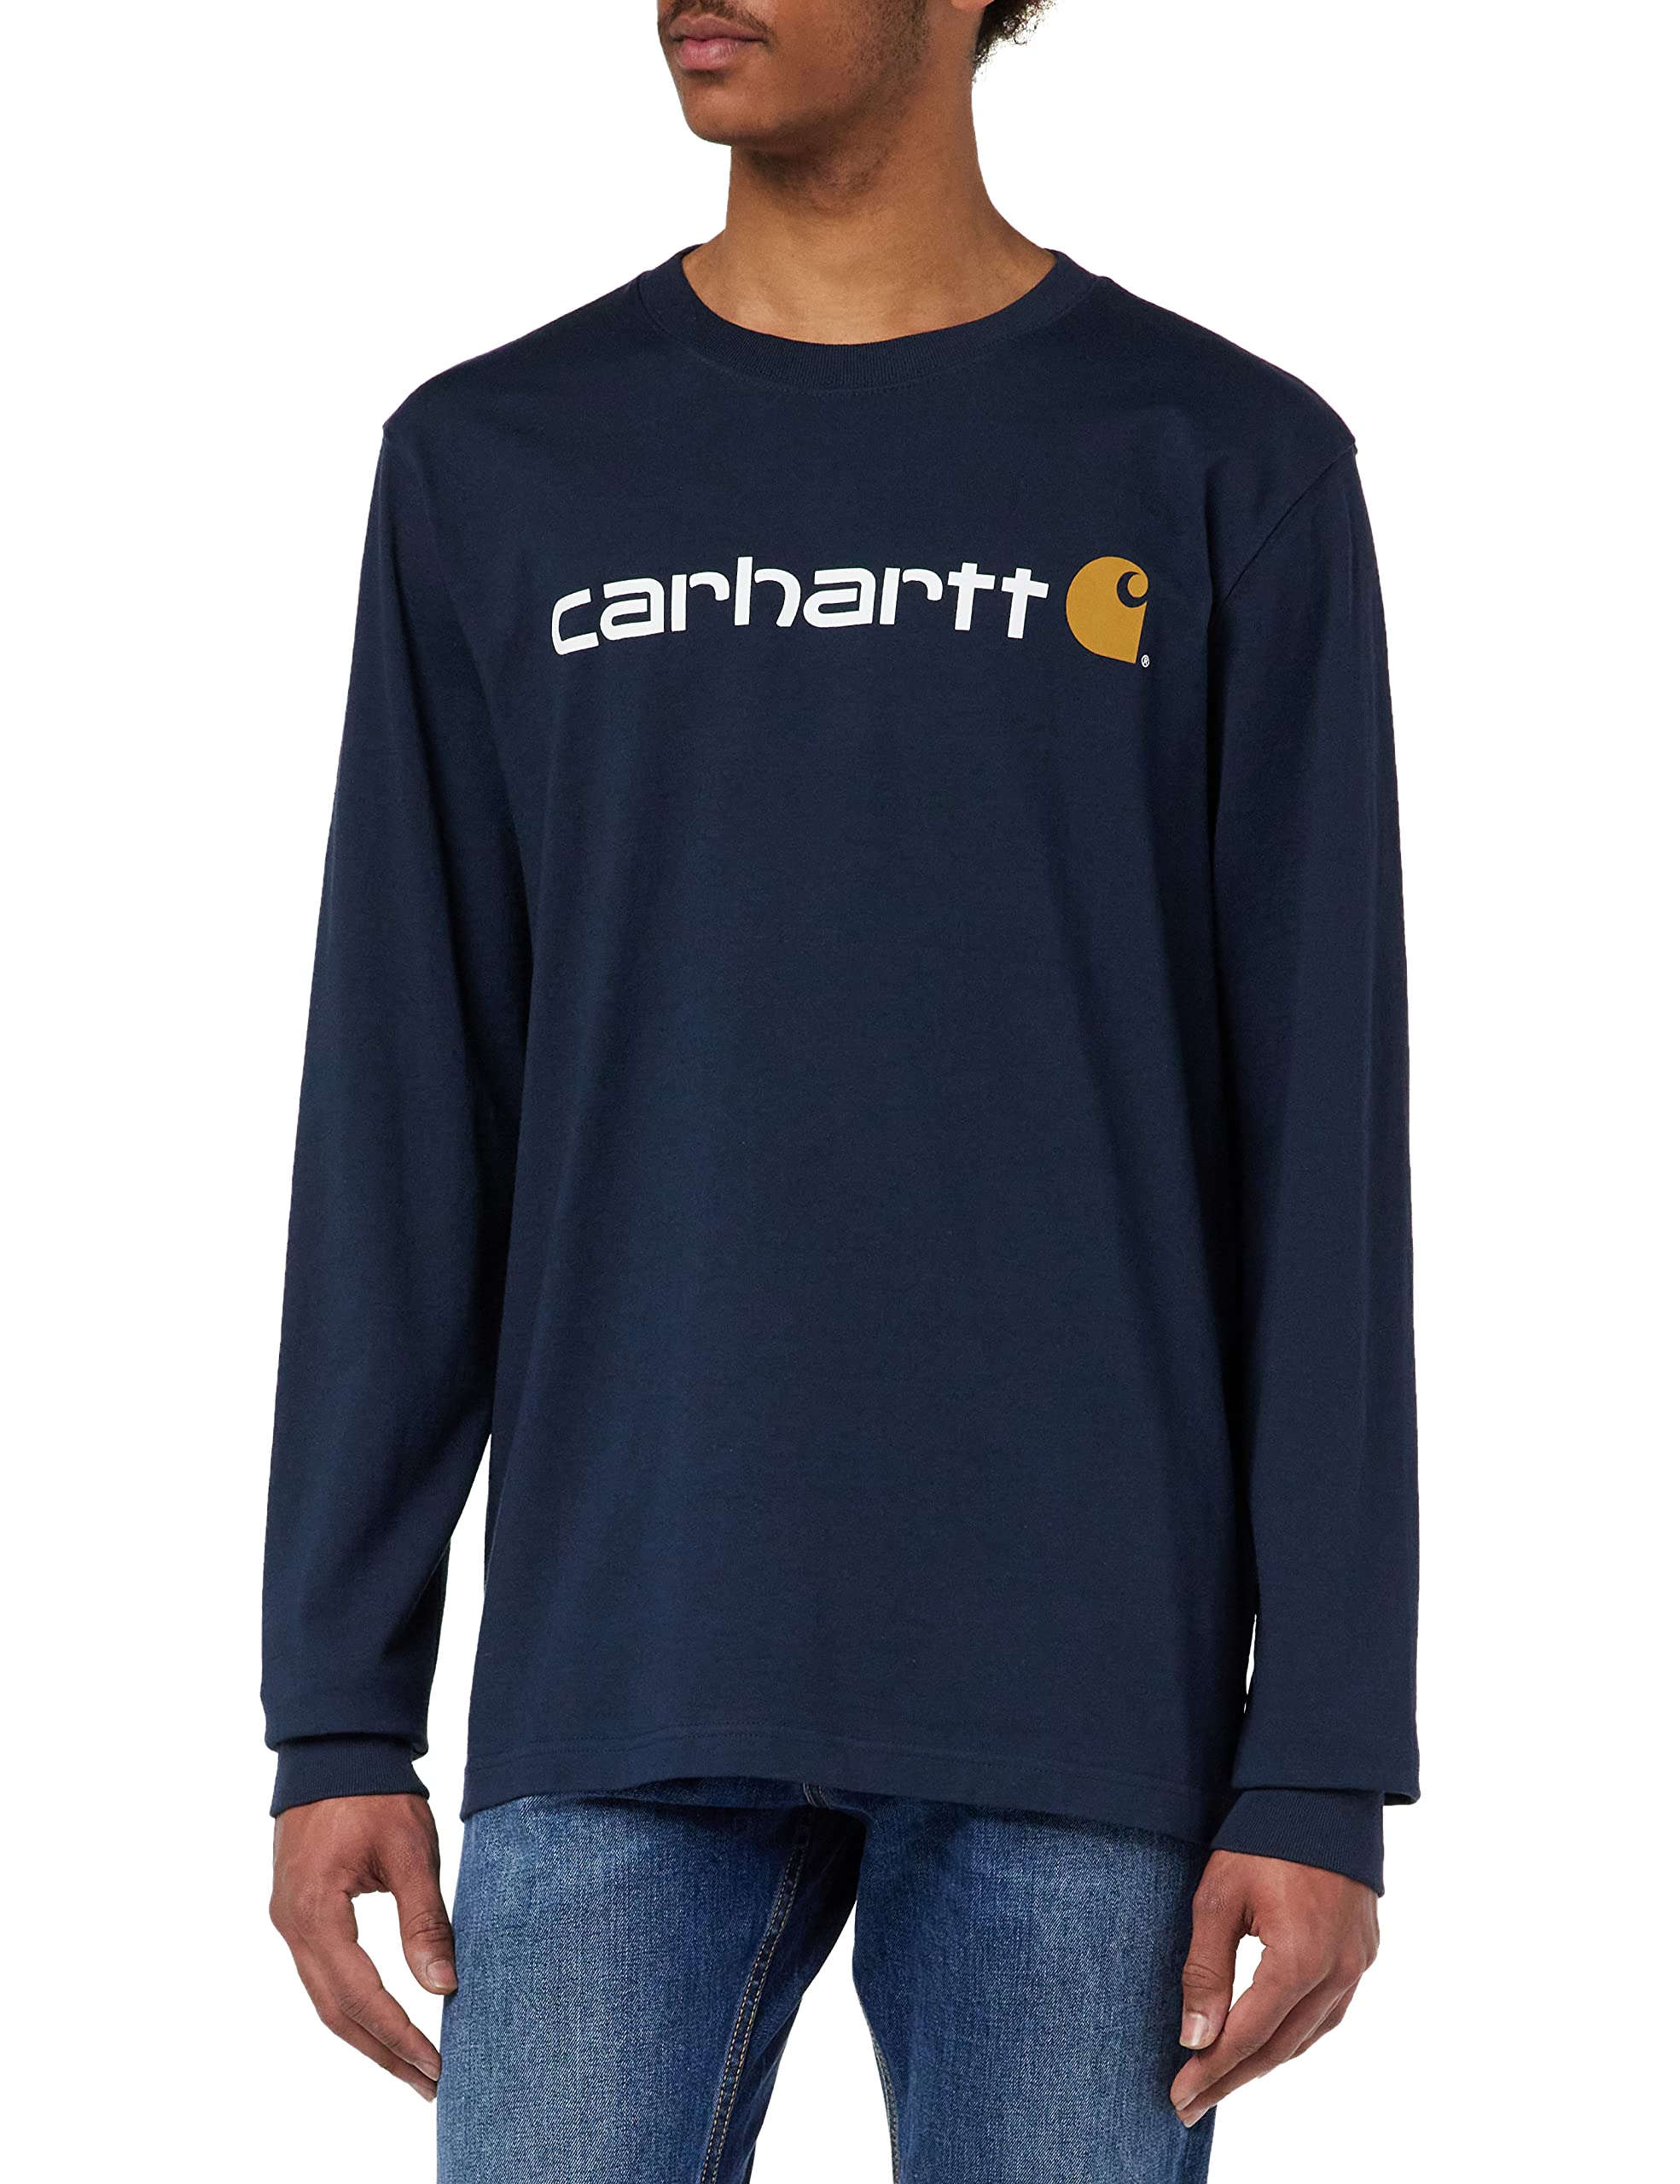 grand choix Carhartt T- Shirt À Manches Longues Épais avec Logo Imprimé Coupe Décontractée Homme sSgvgBAvn Outlet Shop 